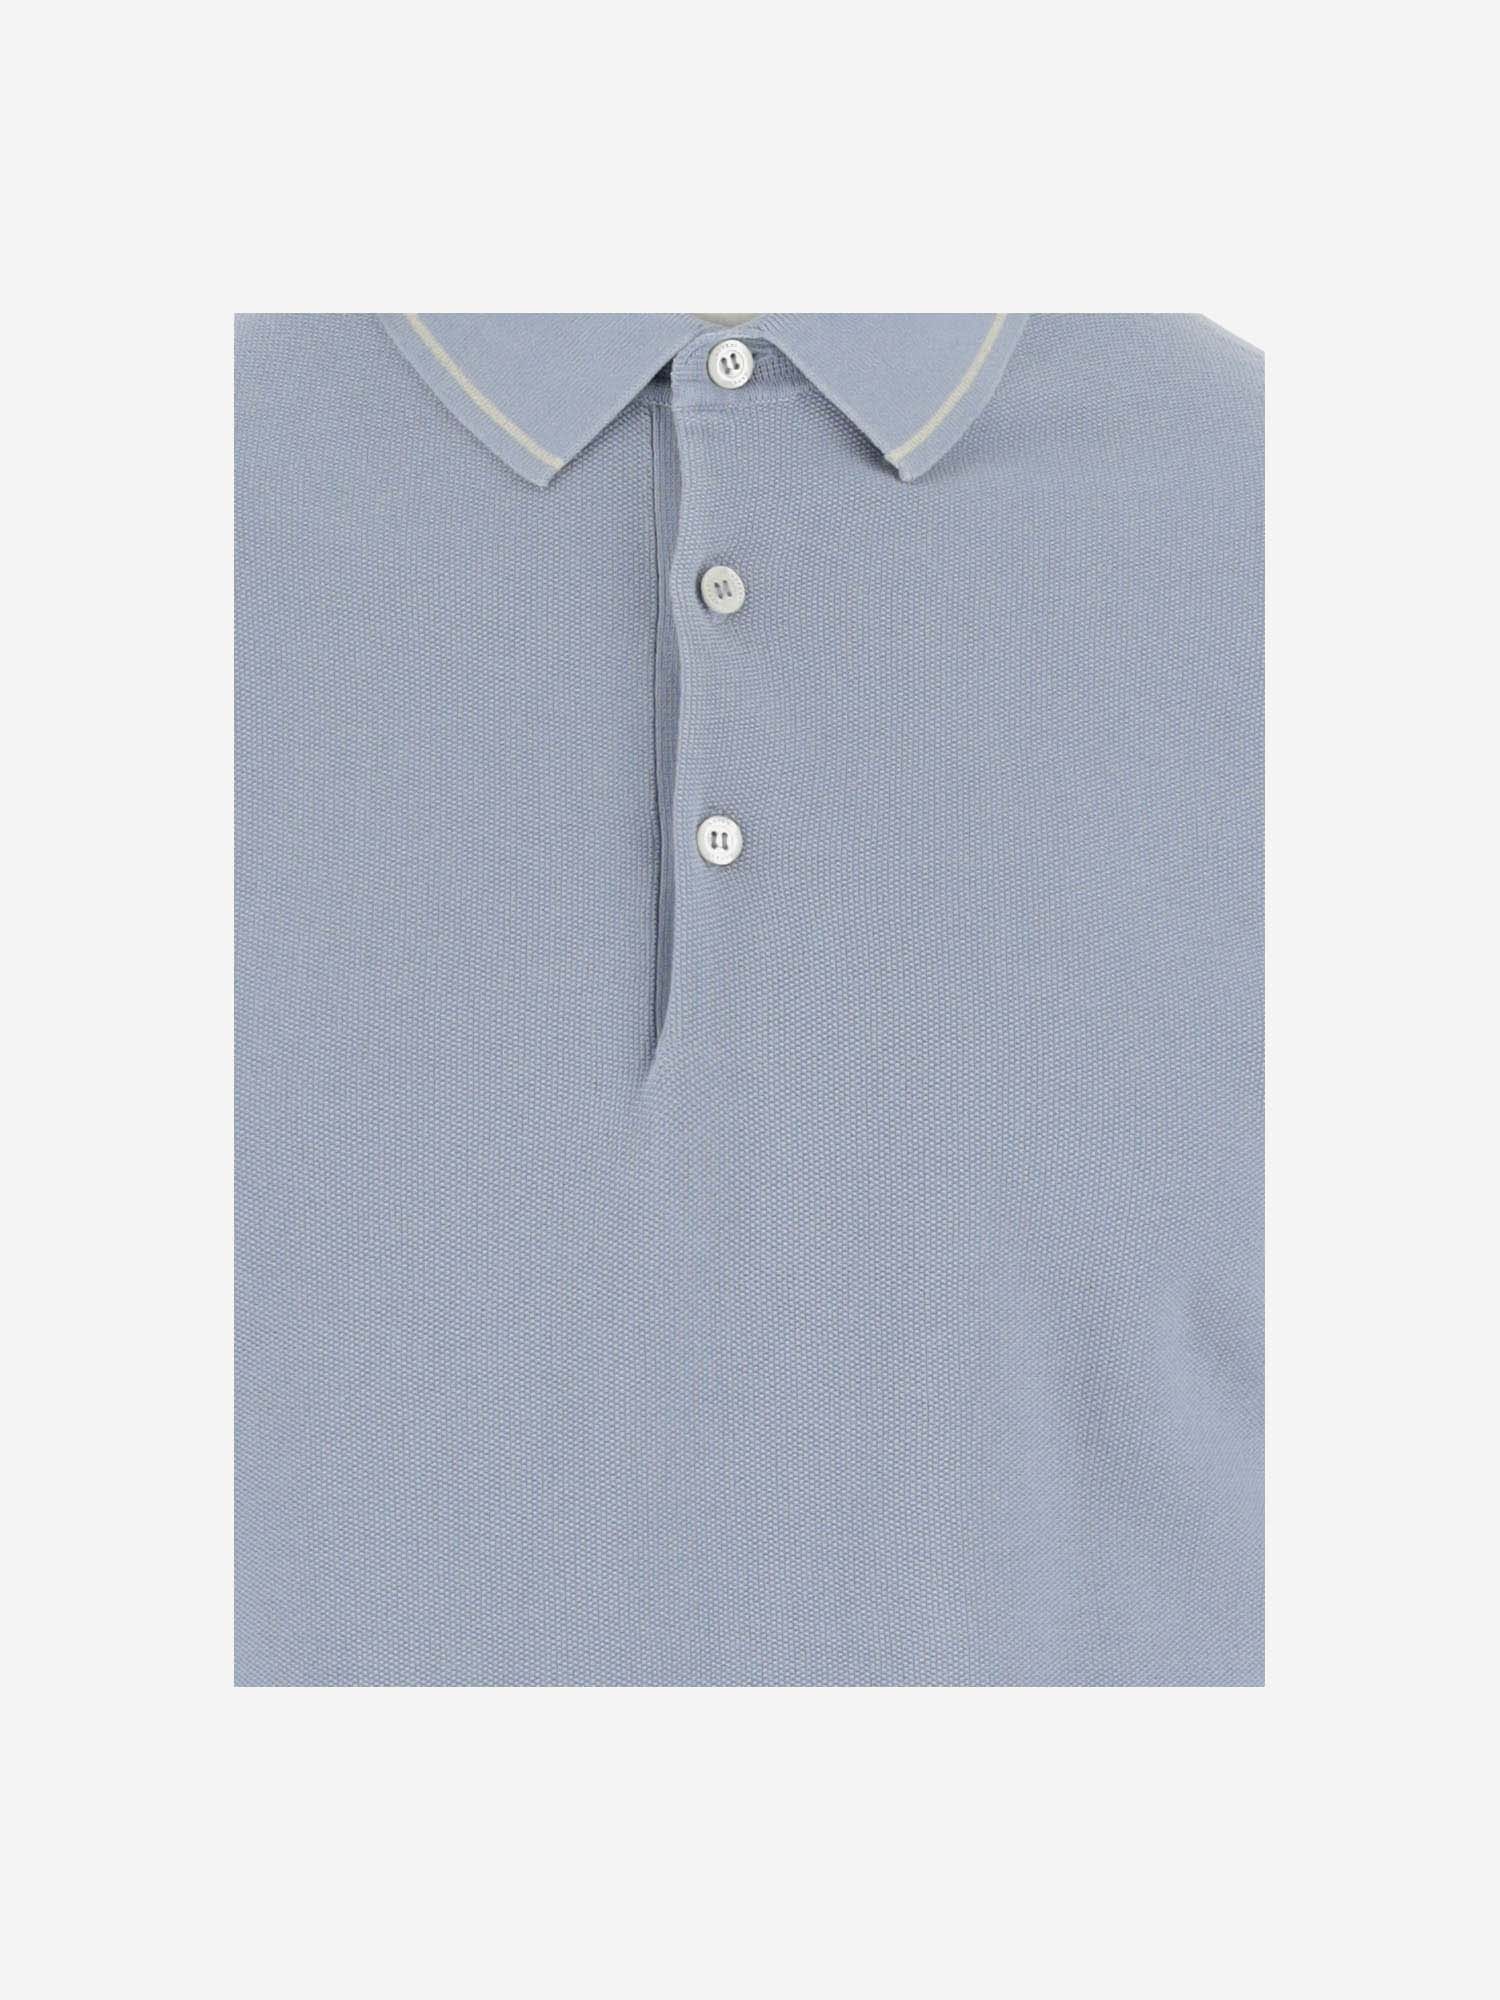 Shop Aspesi Cotton Polo In Clear Blue